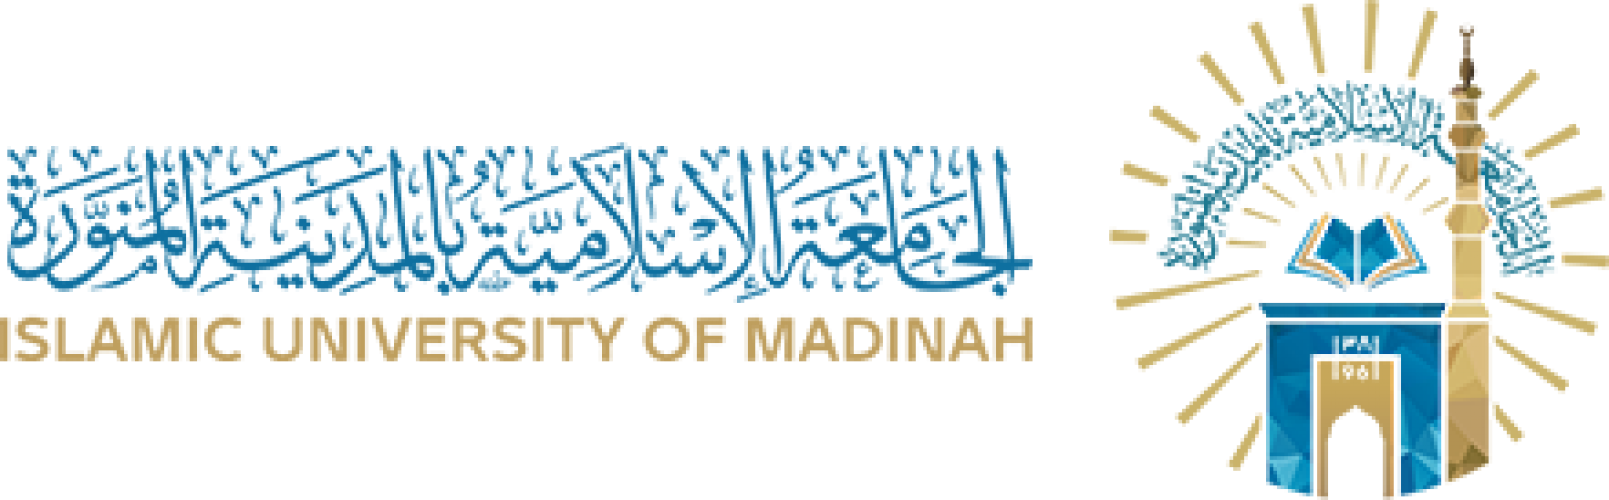 الجامعة الإسلامية تعلن فتح باب القبول في 52 برنامجاً للدراسات العليا